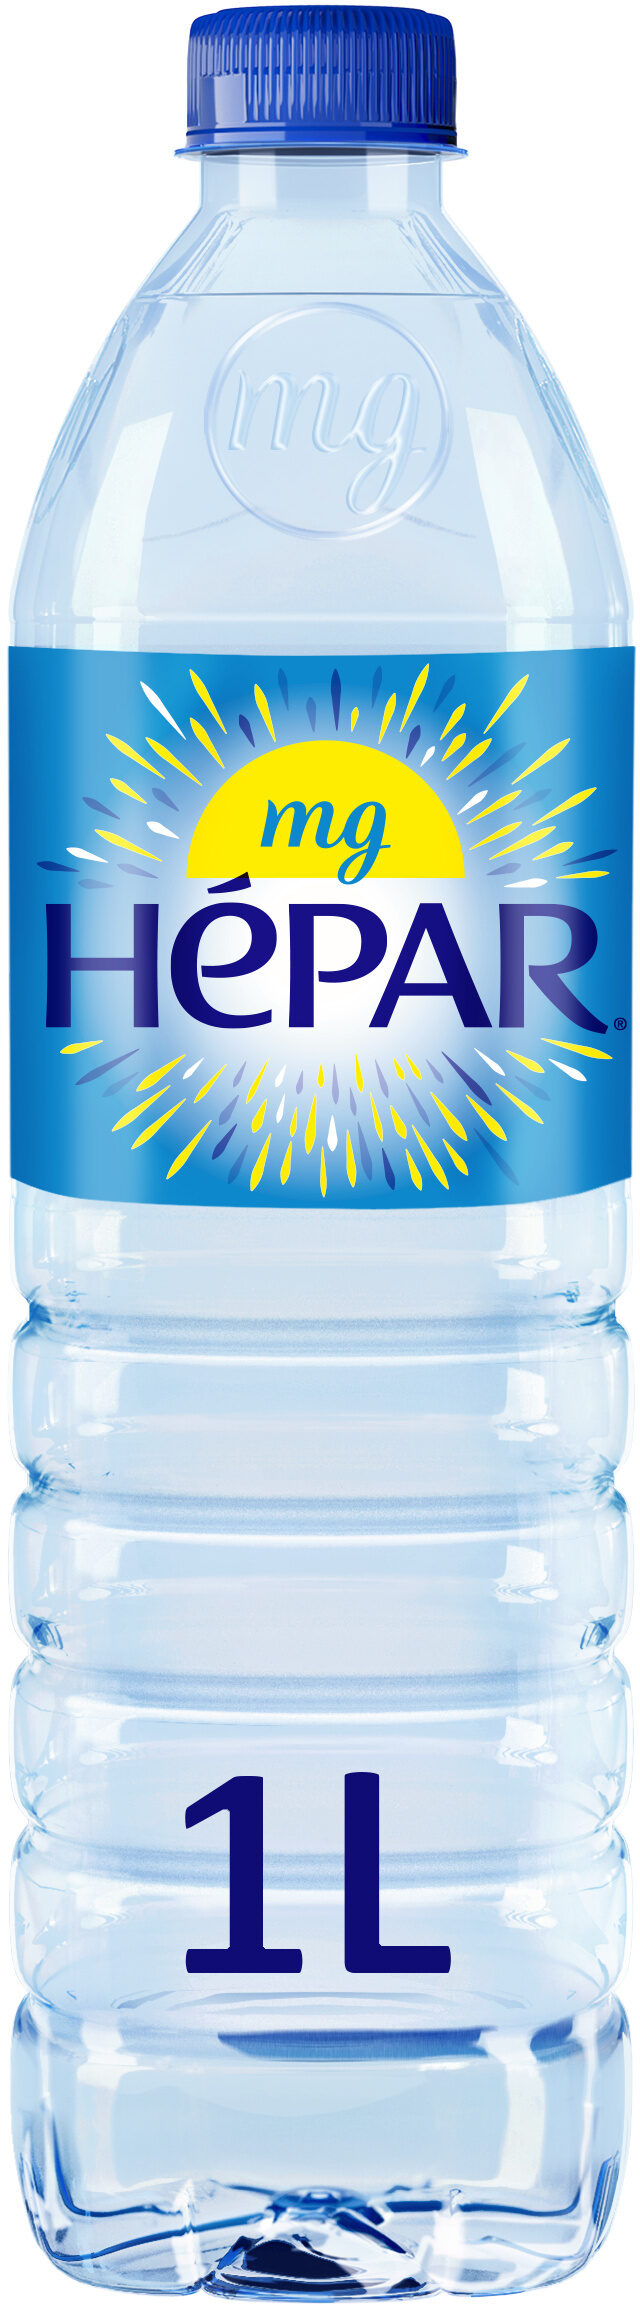 HEPAR eau minérale naturelle - Produit - fr